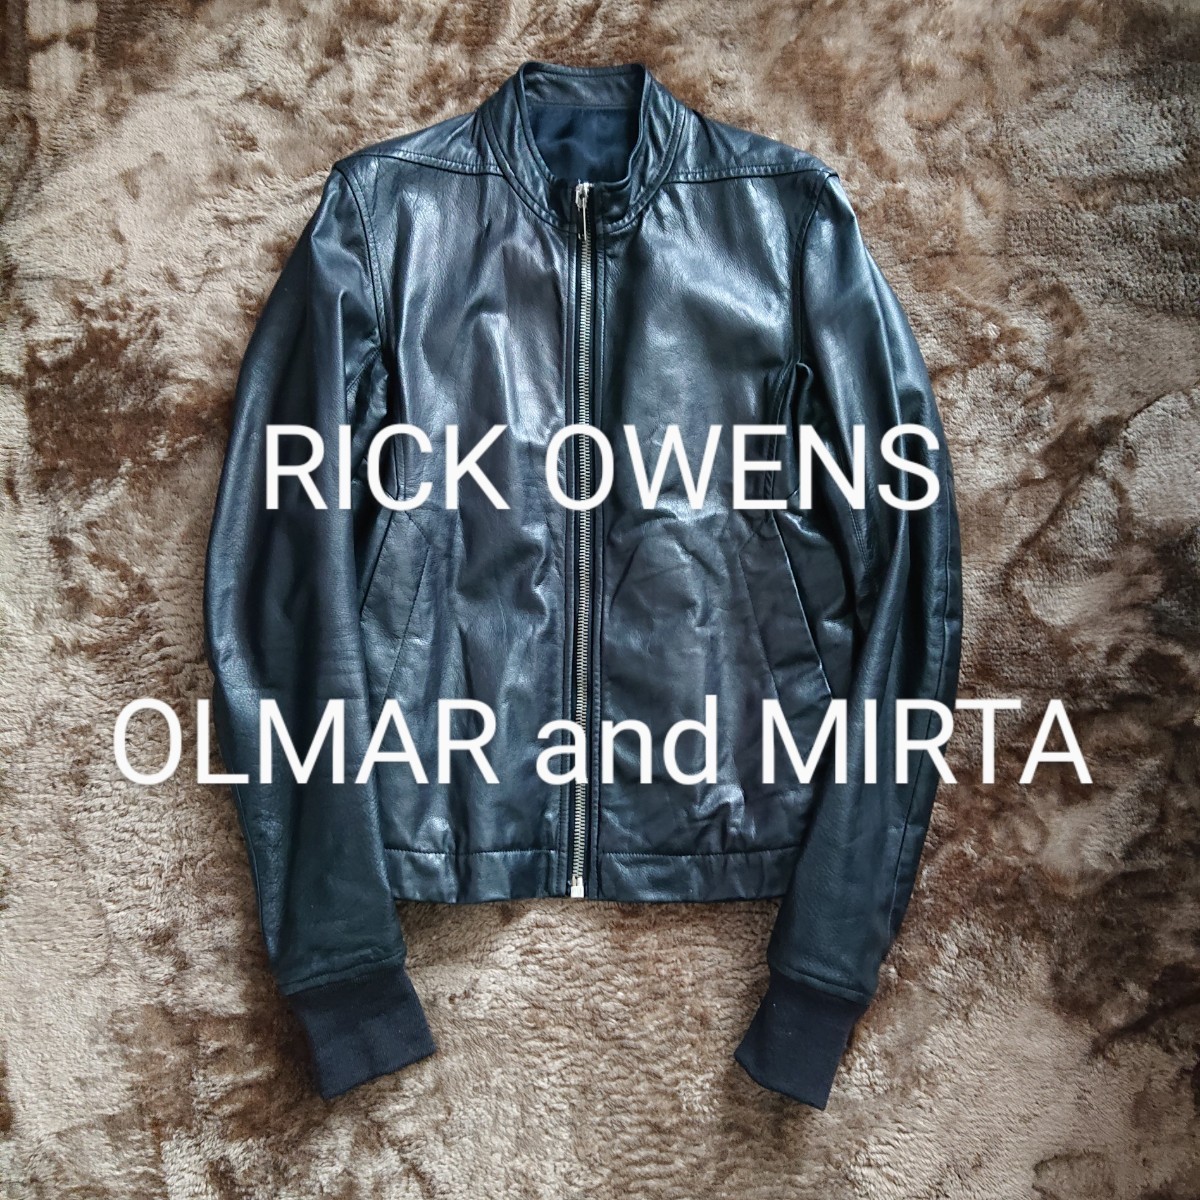 お買い得販売中 Rick レザーライダースジャケット MIRTA and OLMAR Owens レザージャケット